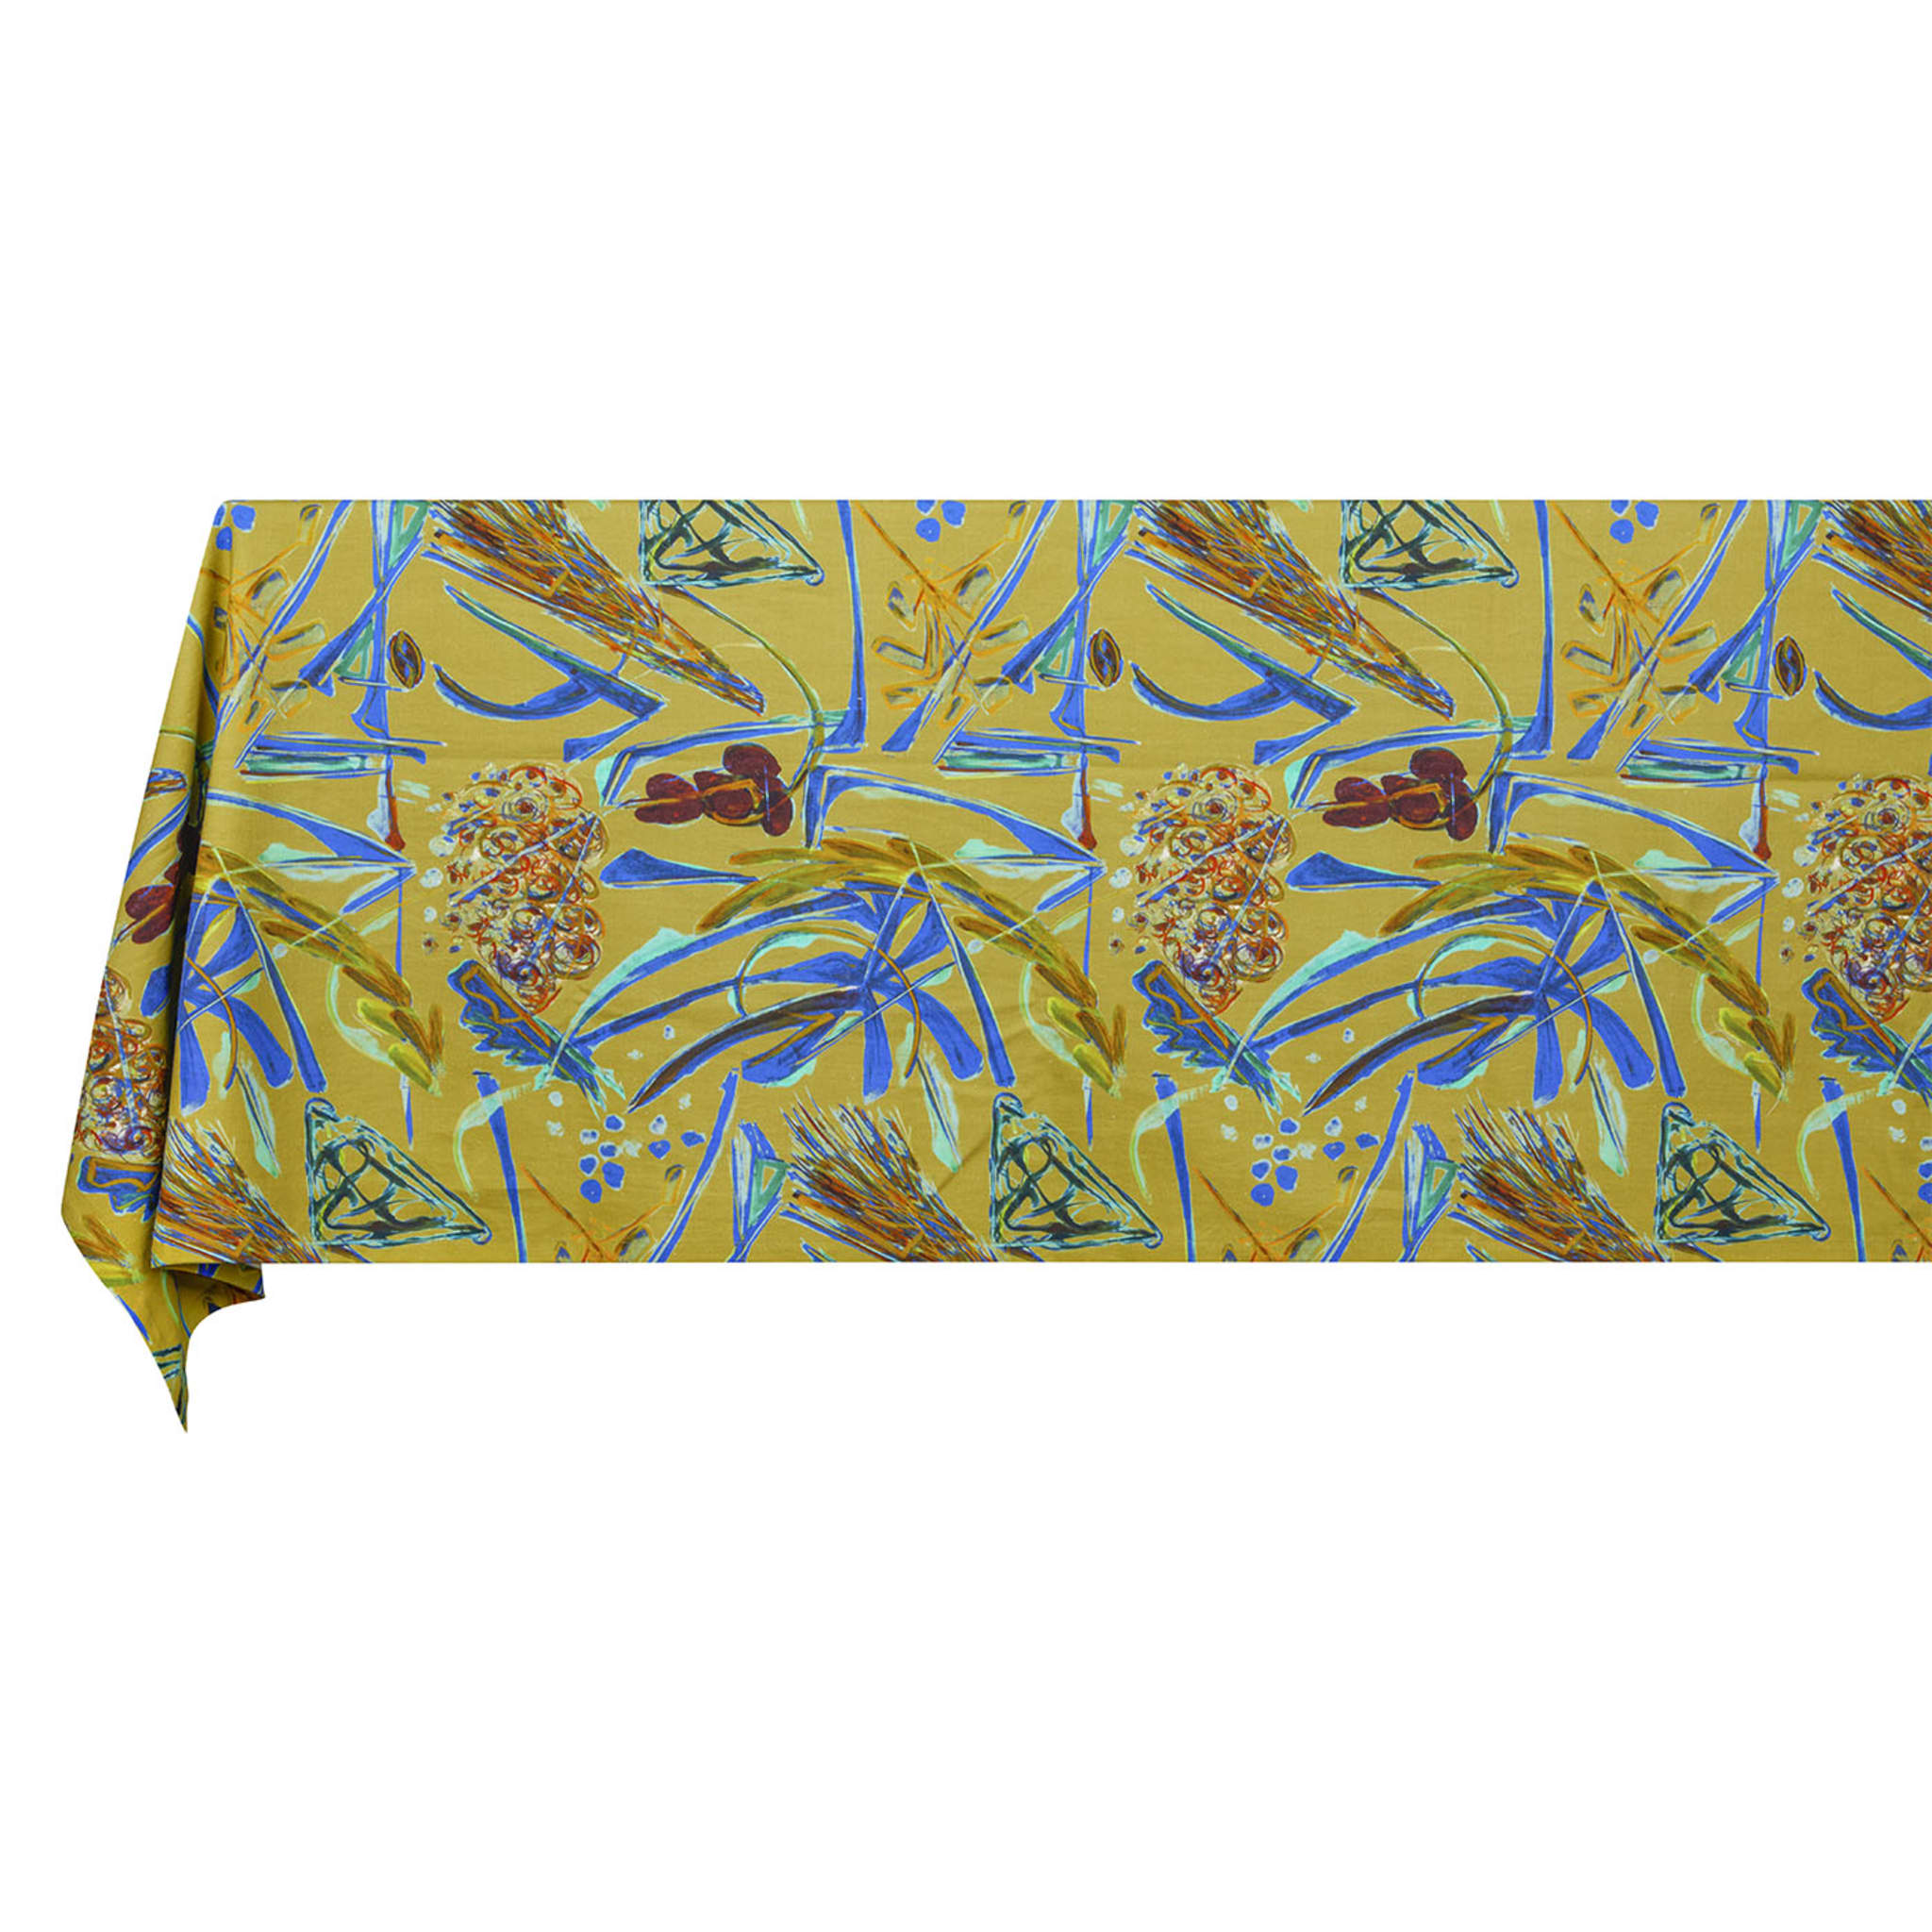 Panarea linen cotton tablecloth - Alternative view 1